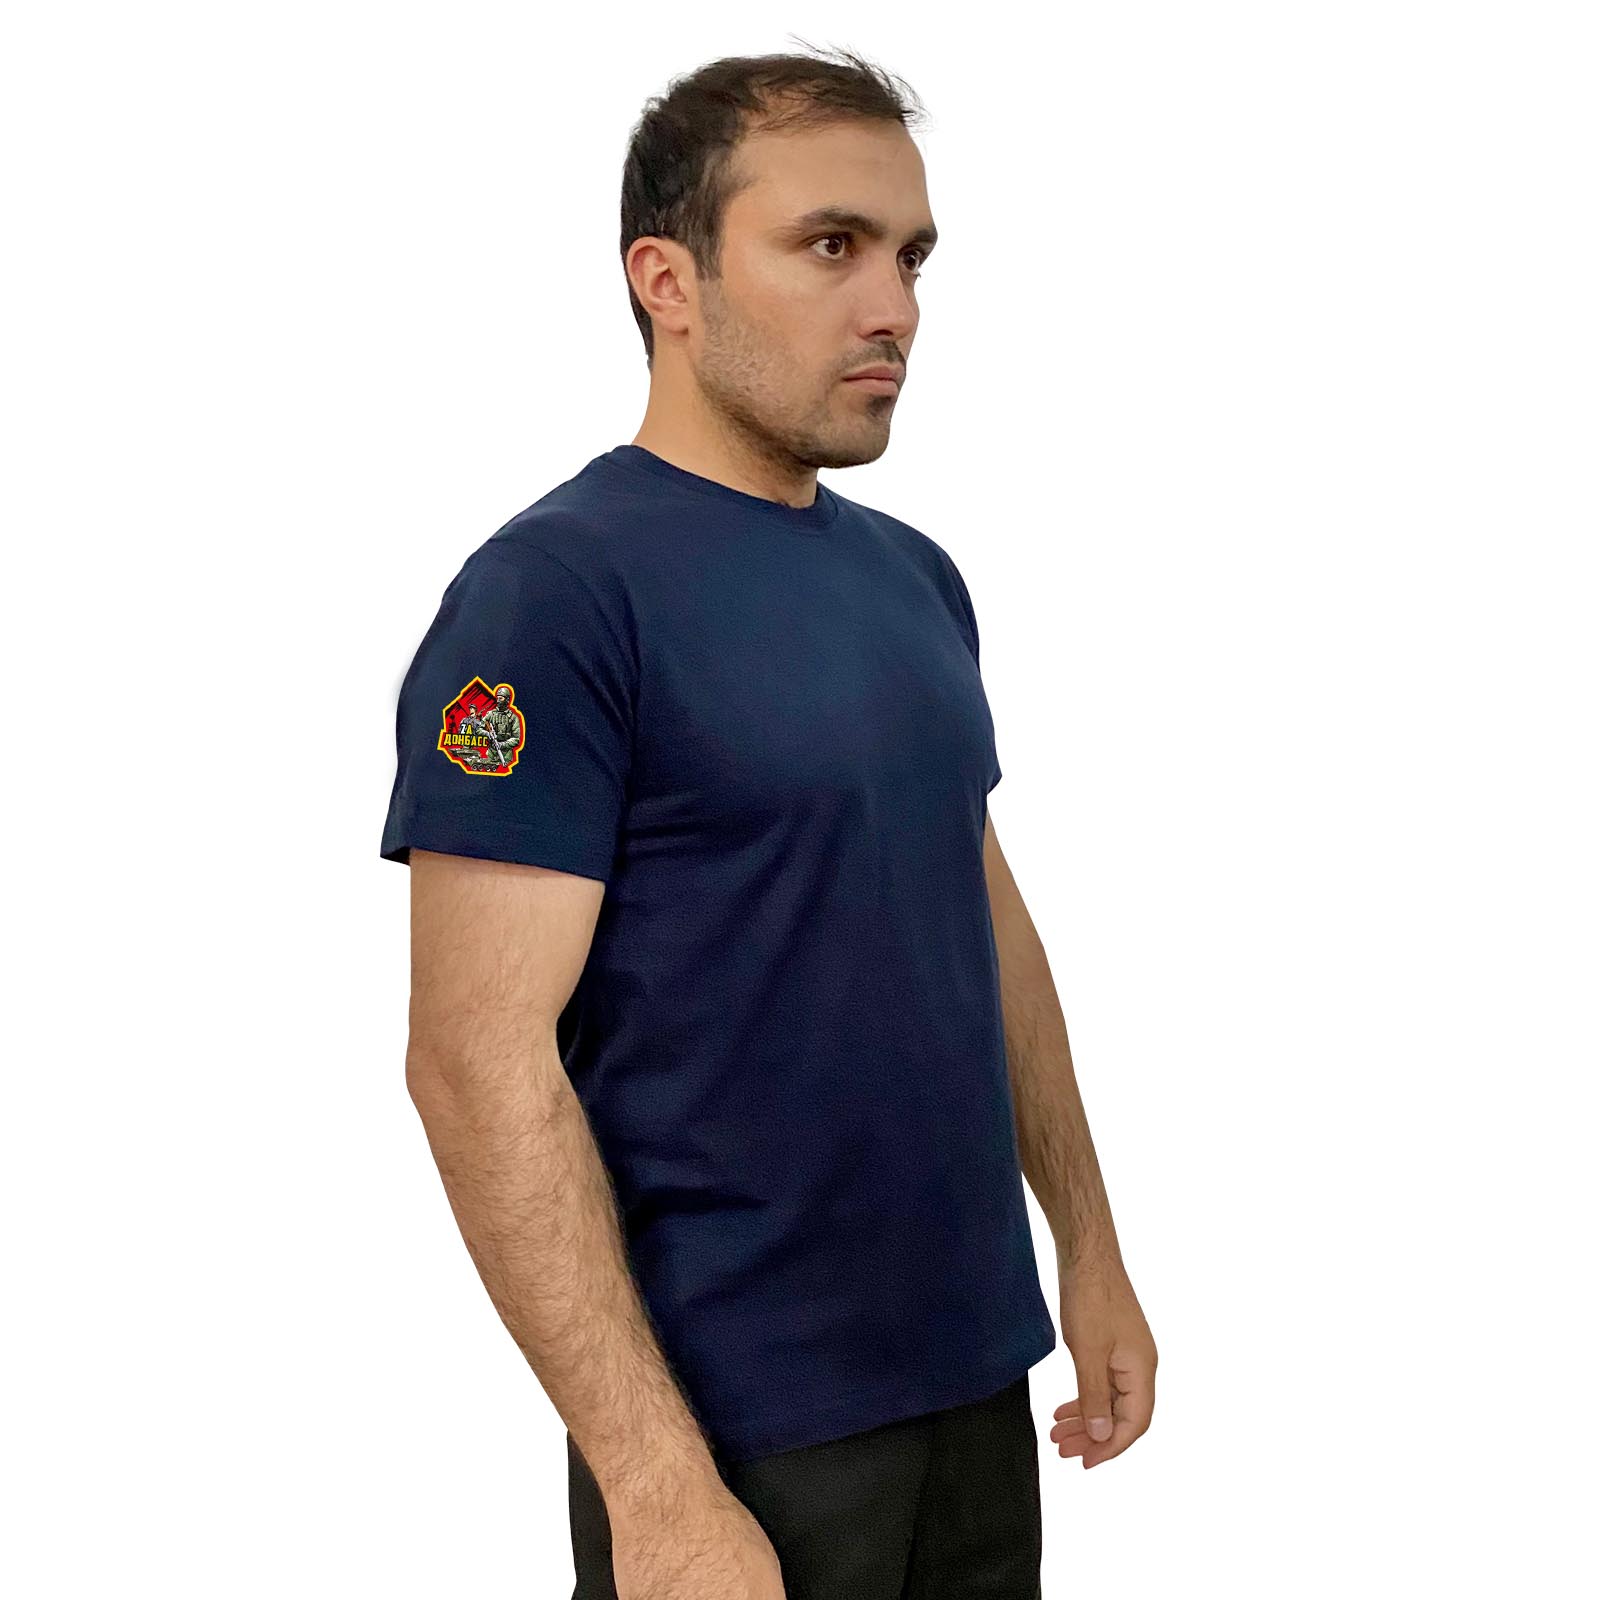 Тёмно-синяя футболка с трансфером "Zа Донбасс" на рукаве